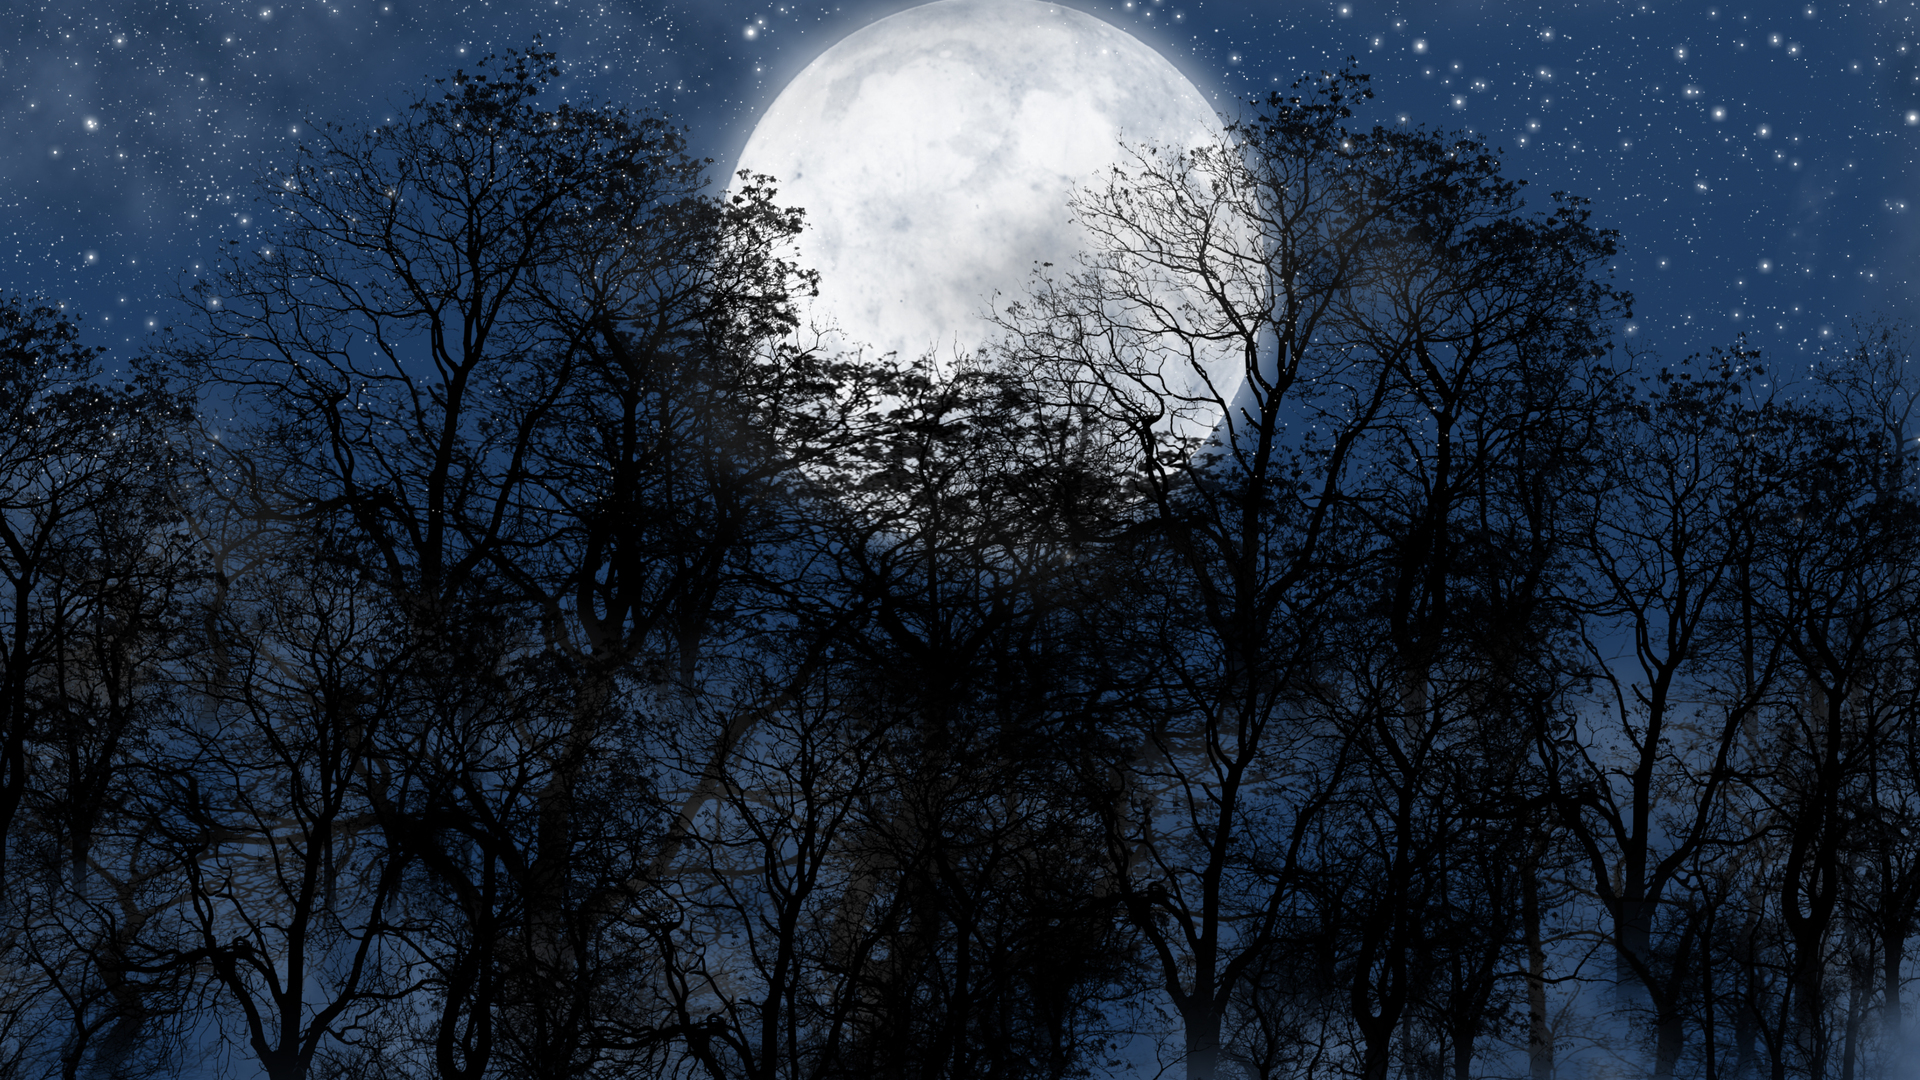 Скачать обои бесплатно Ночь, Луна, Силуэт, Лес, Дерево, Звездное Небо, Синий, Фантазия, Художественные картинка на рабочий стол ПК